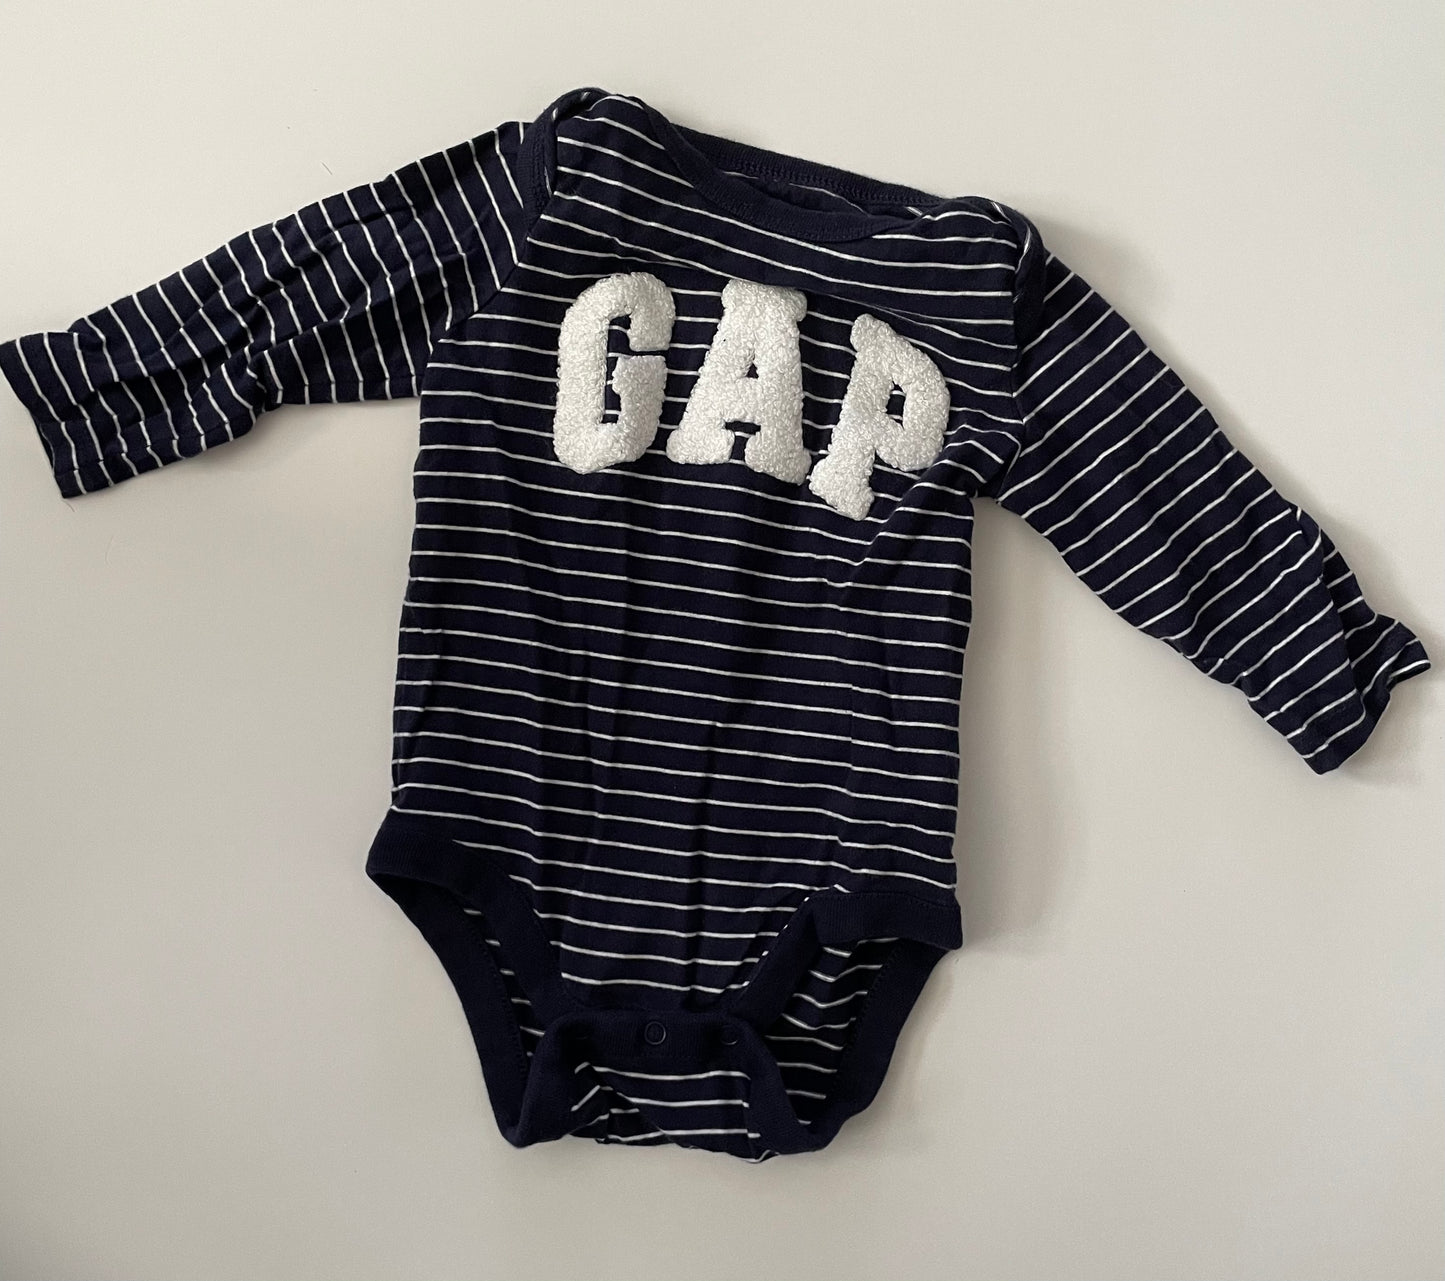 Baby Gap 3-6 month long sleeve onsie